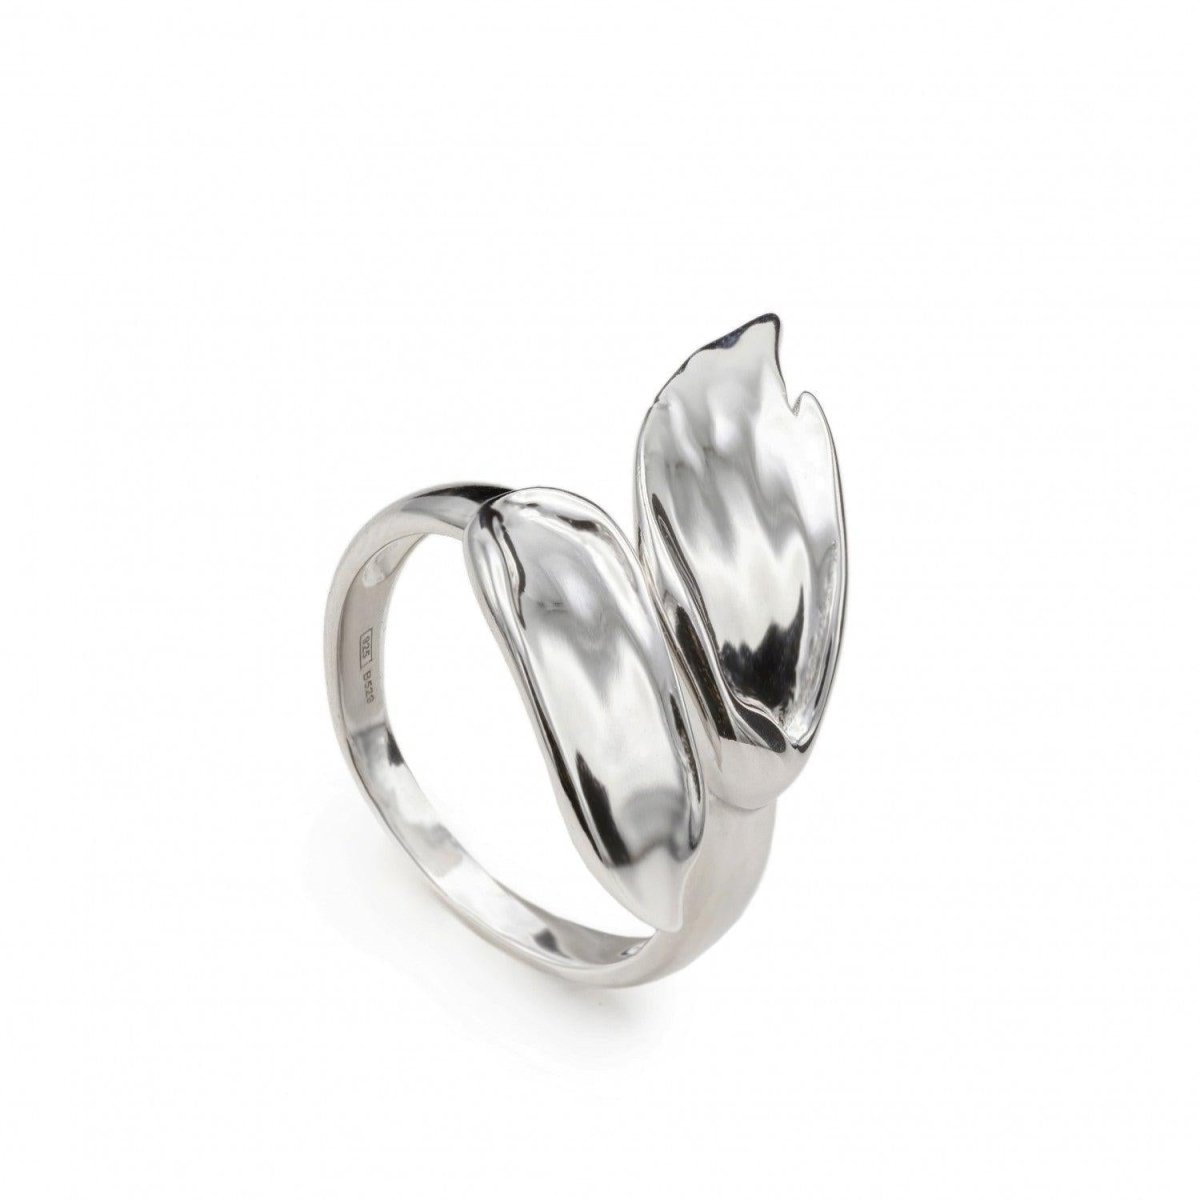 Ring - Double brushstroke design rings in plain silver